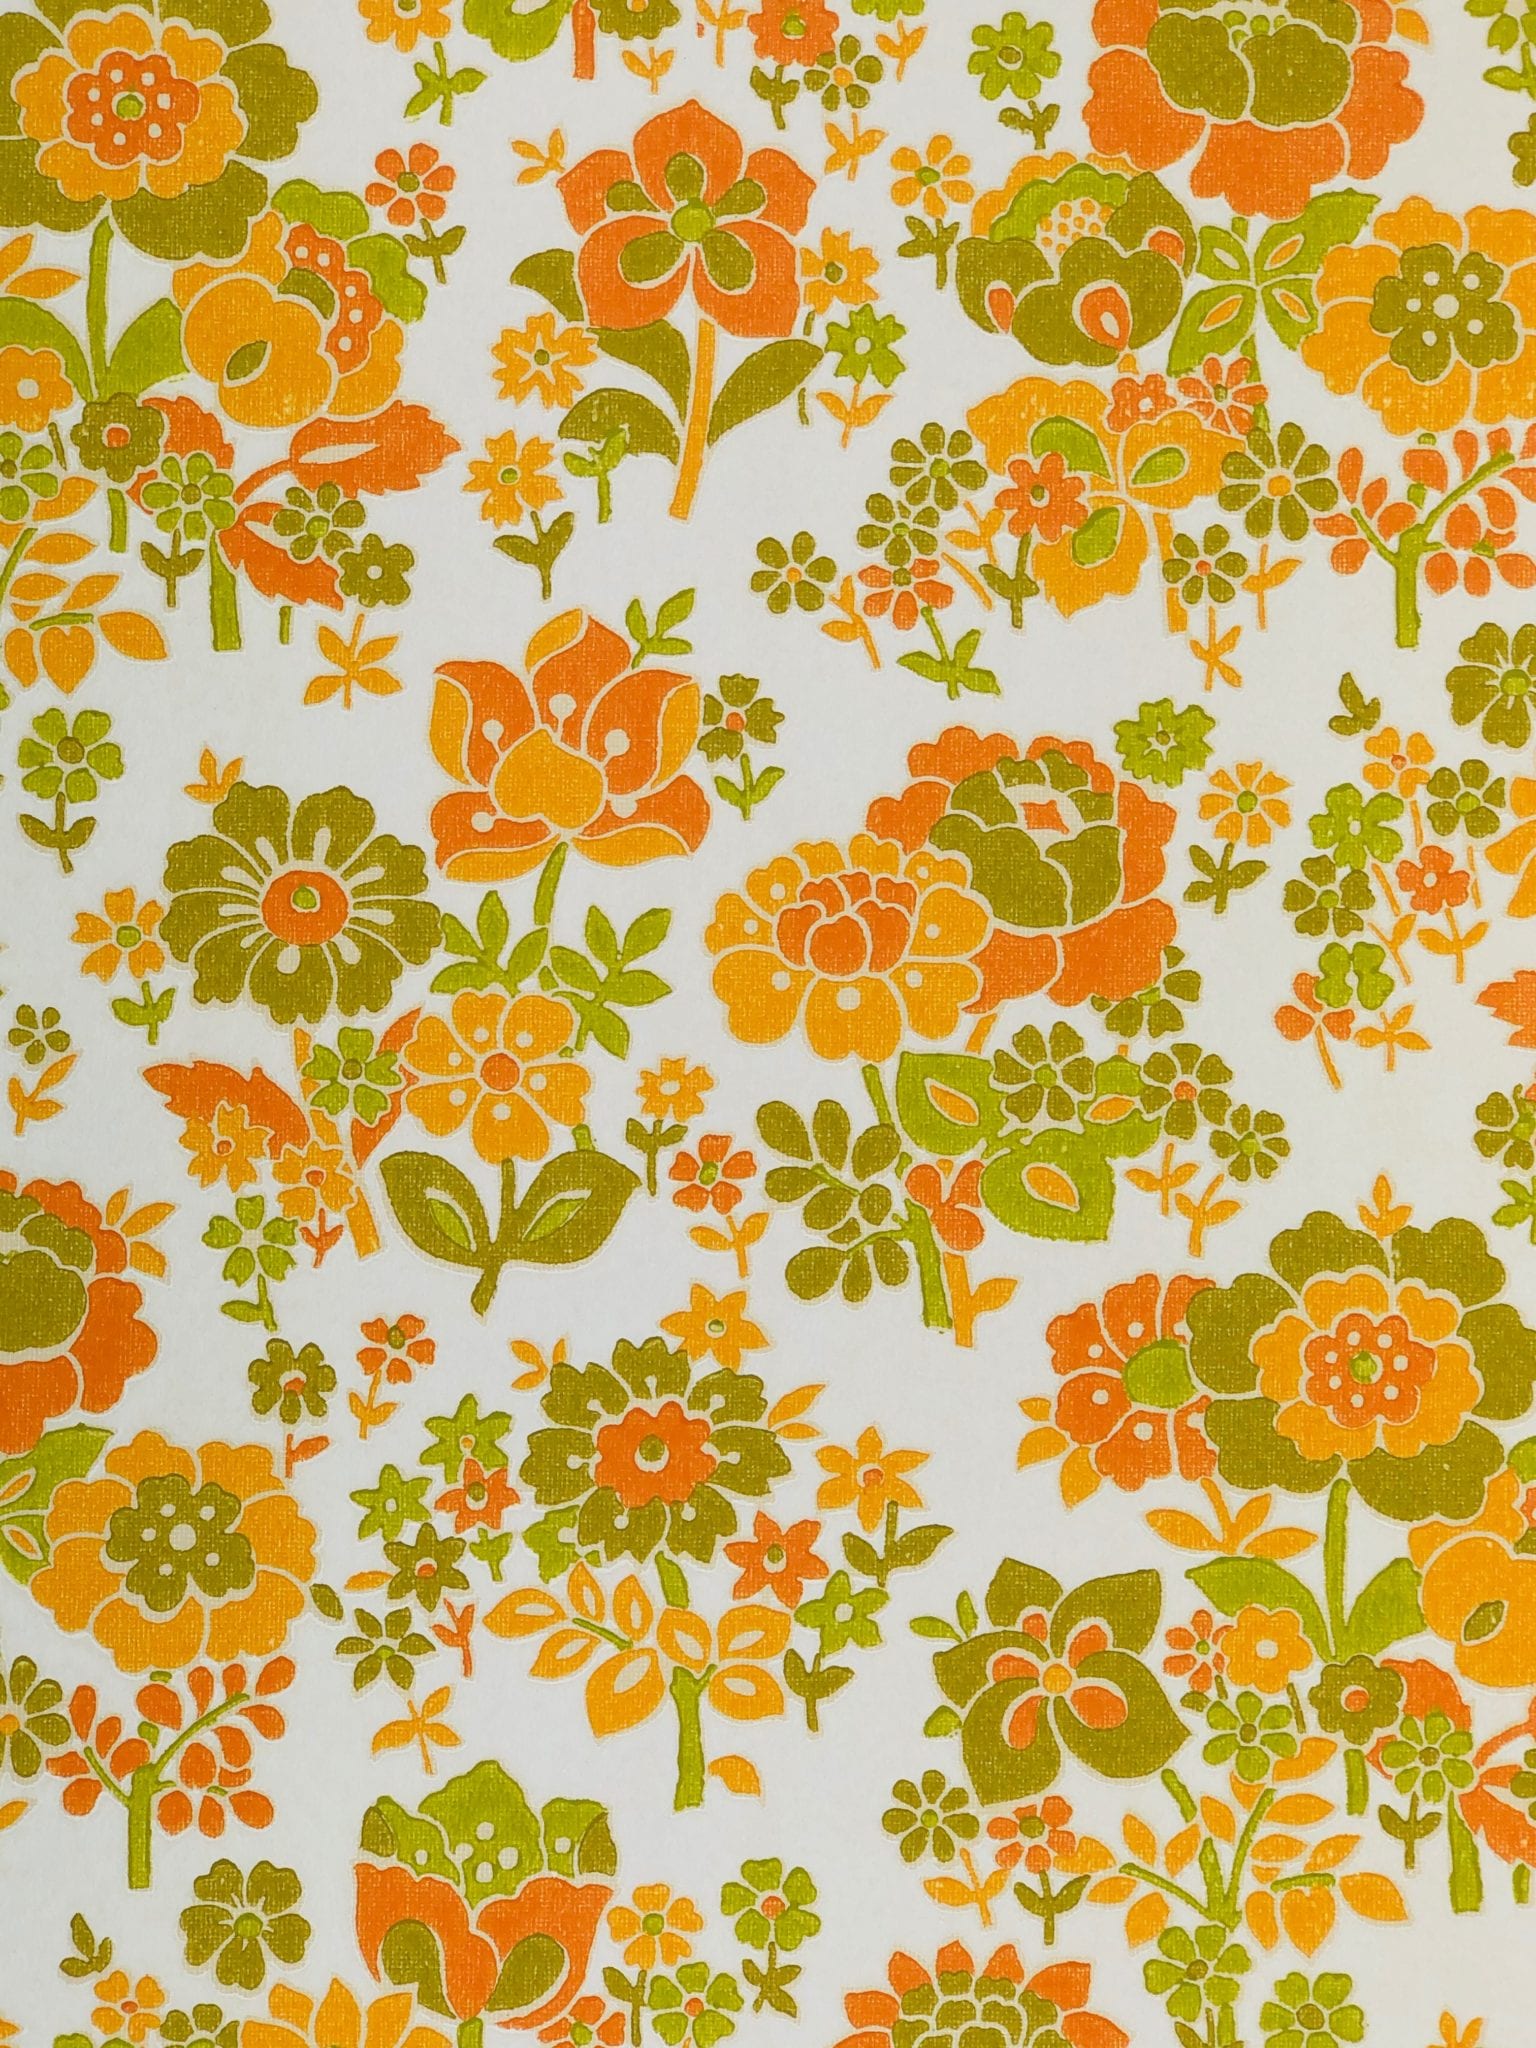 オレンジ色の花の壁紙,オレンジ,パターン,包装紙,黄,設計